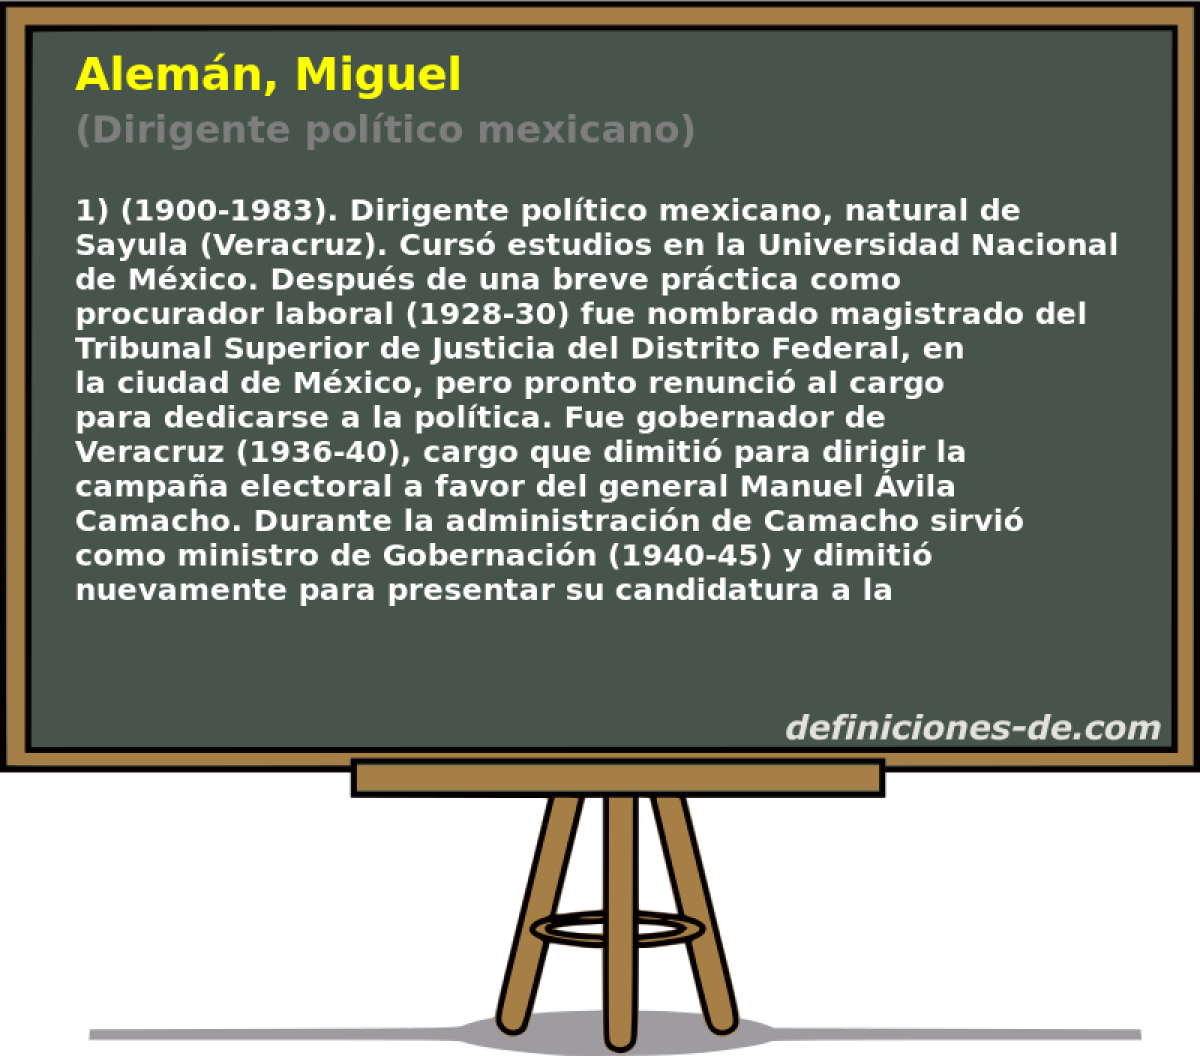 Alemn, Miguel (Dirigente poltico mexicano)